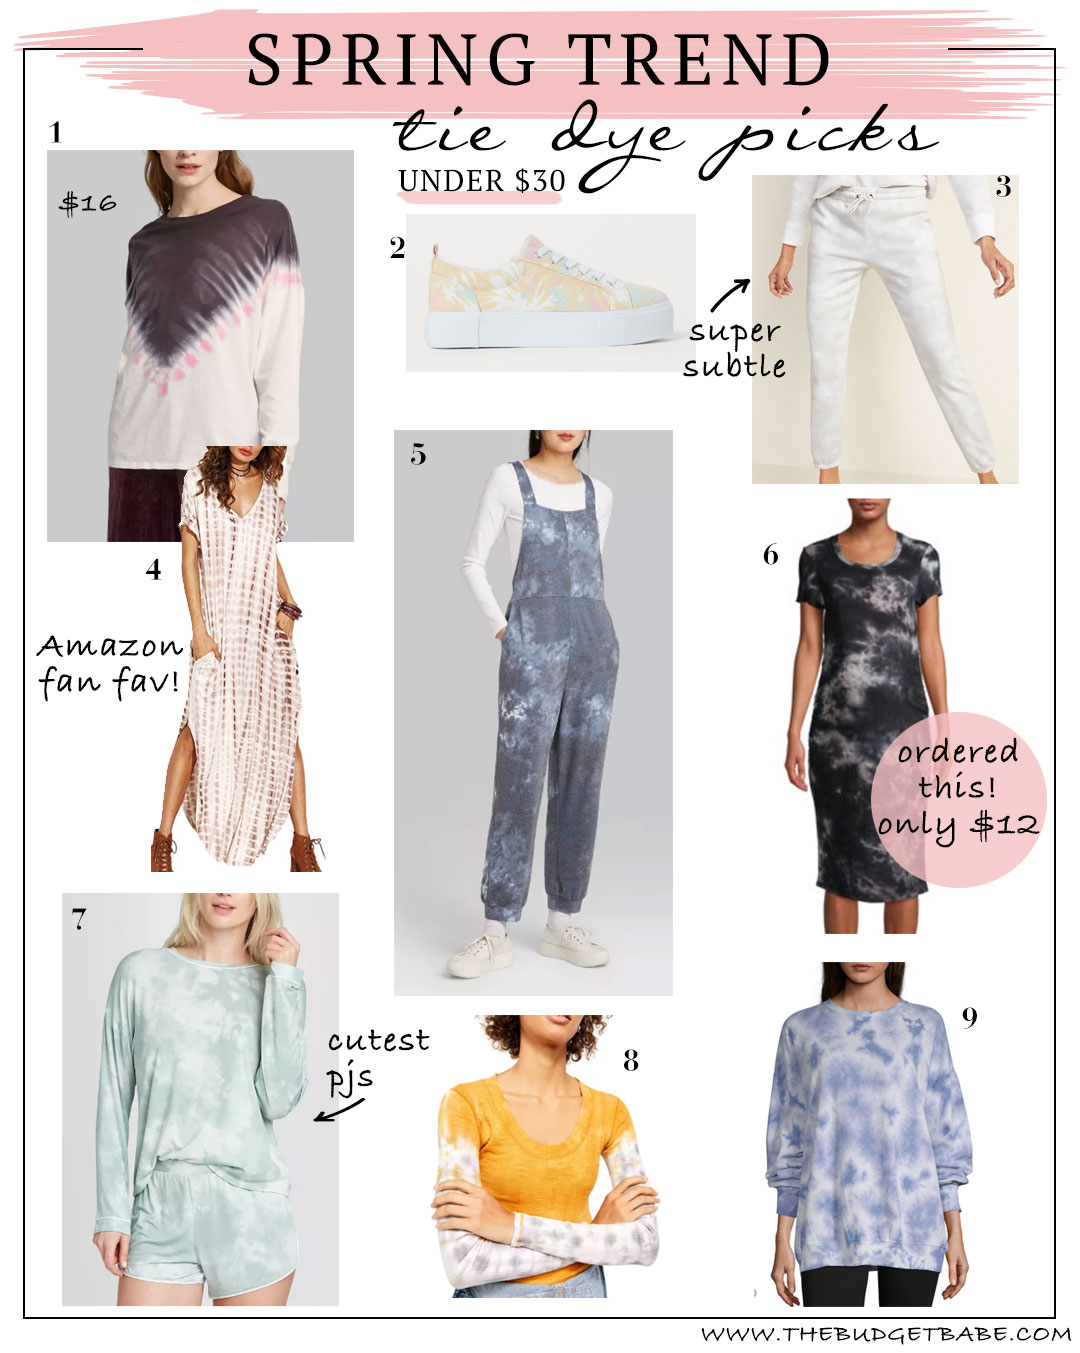 Spring Trend 2020: Tie Dye! Love these picks under $30